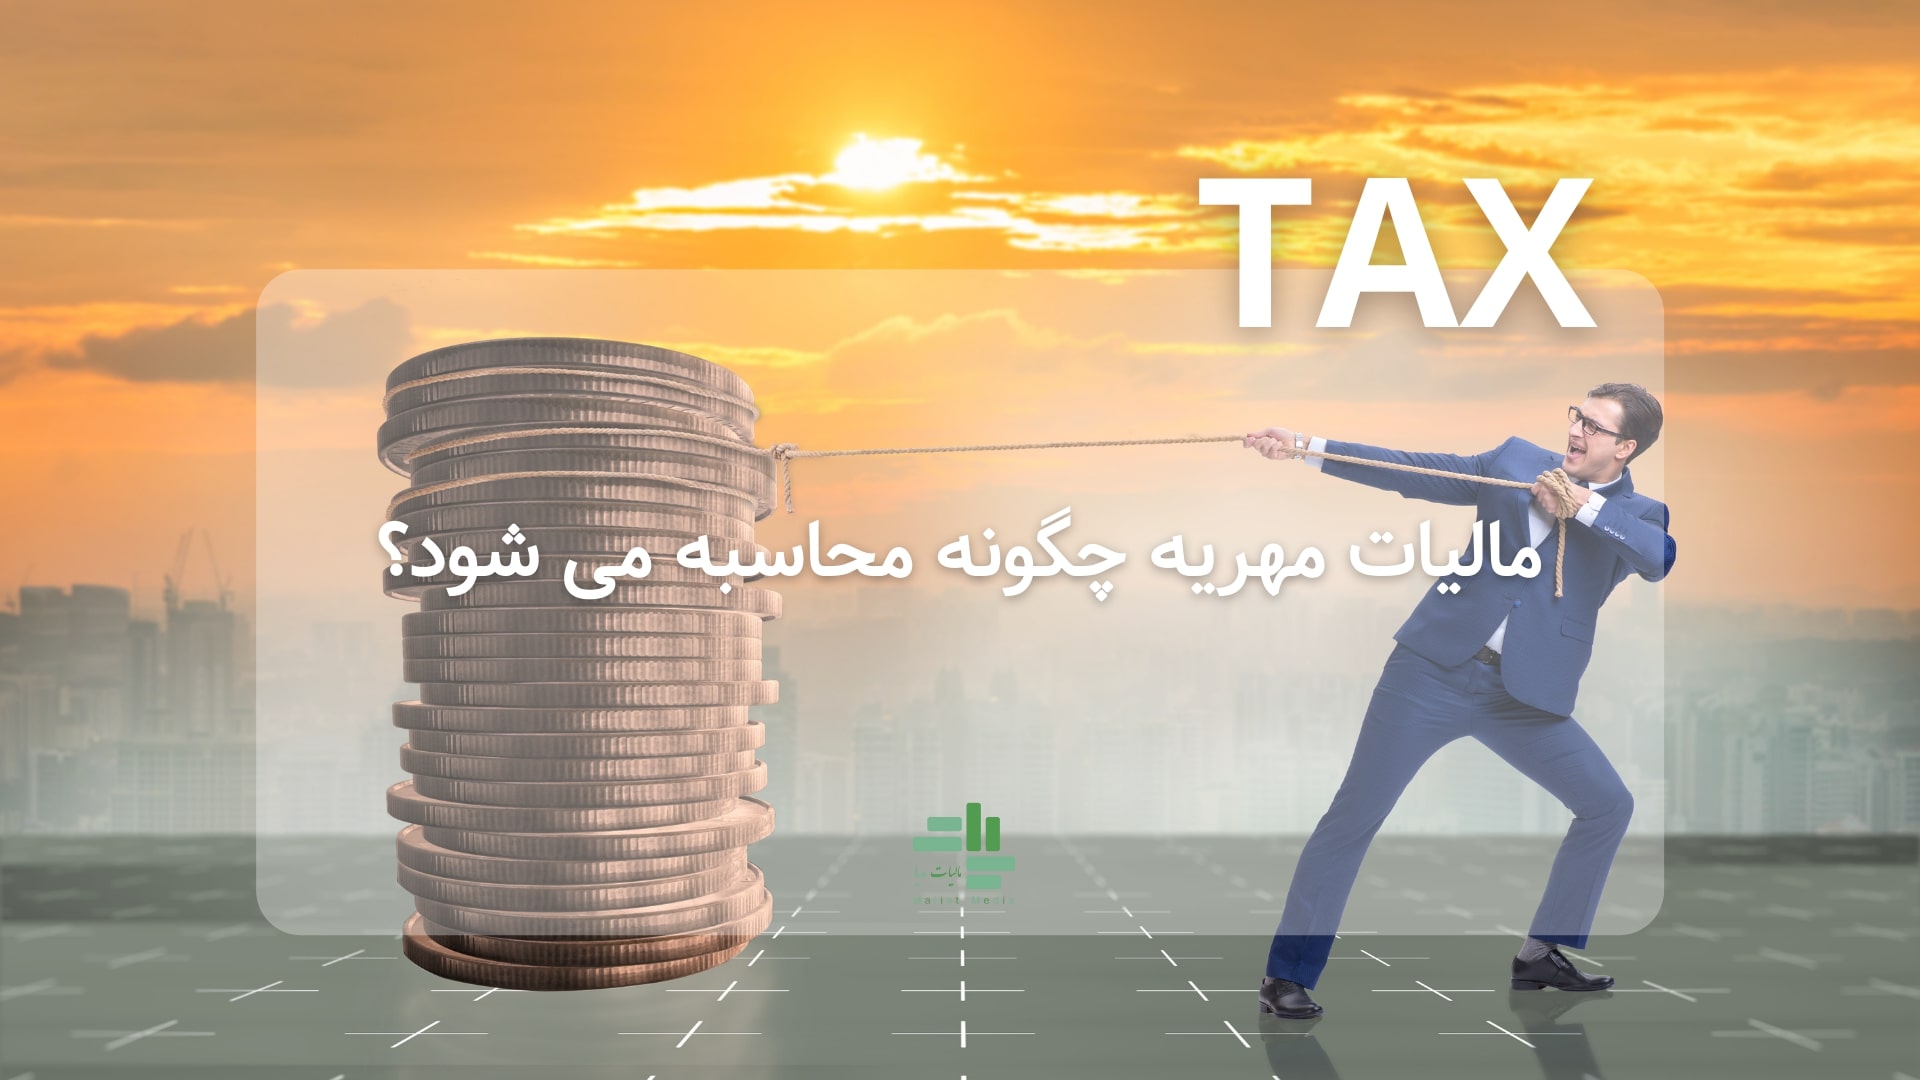 مالیات مهریه چگونه محاسبه می شود و مشاوره مالیاتی آن چگونه است؟